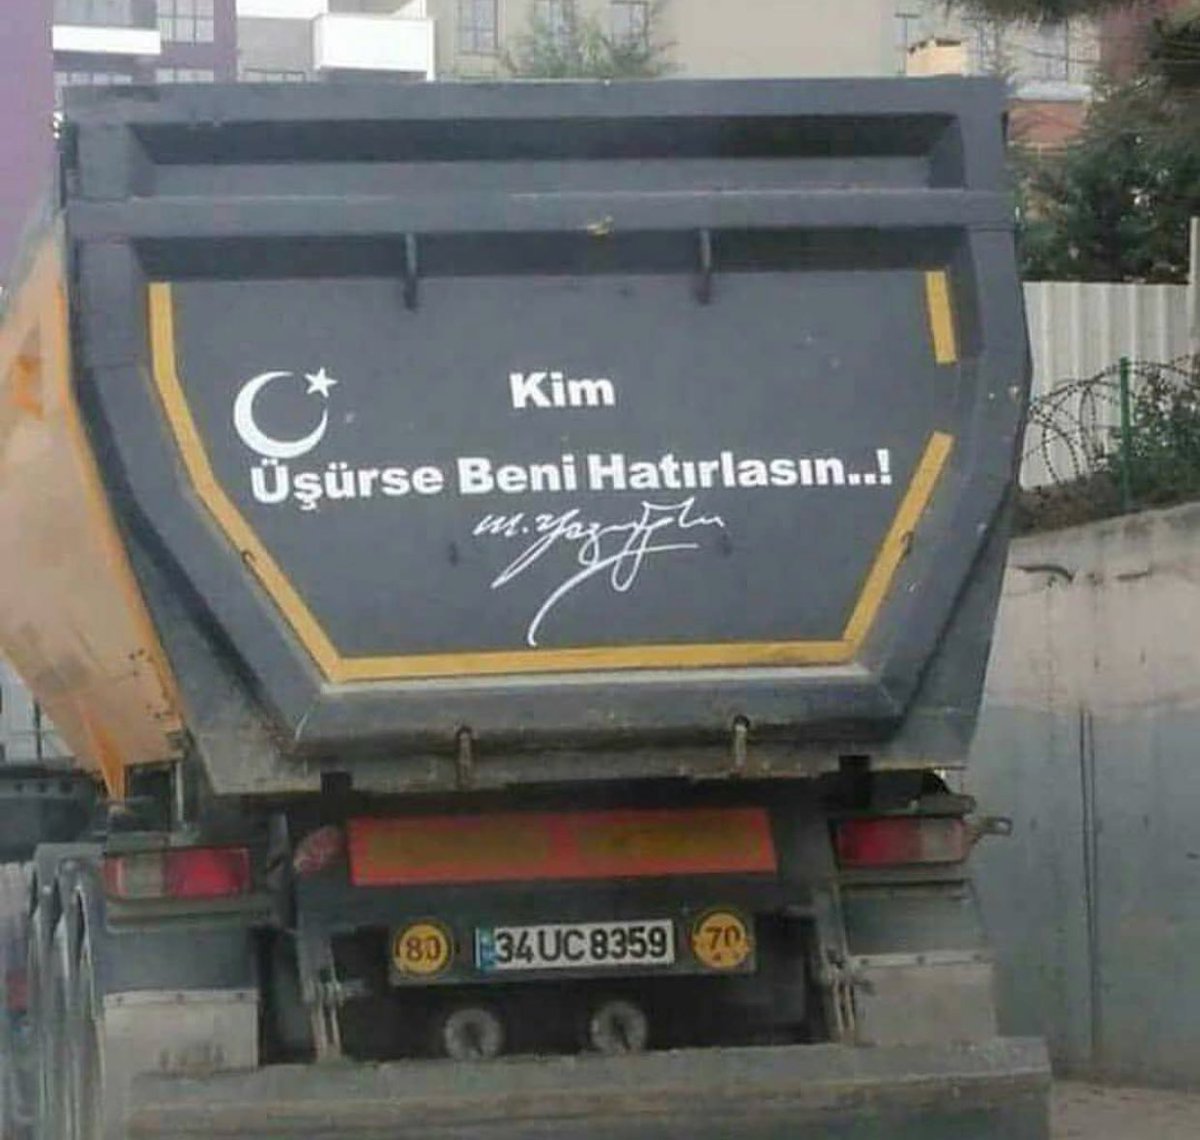 "Kim üşürse beni hatırlasın" sözünü Muhsin Yazıcıoğlu'na atfeden kamyon arkası yazısı